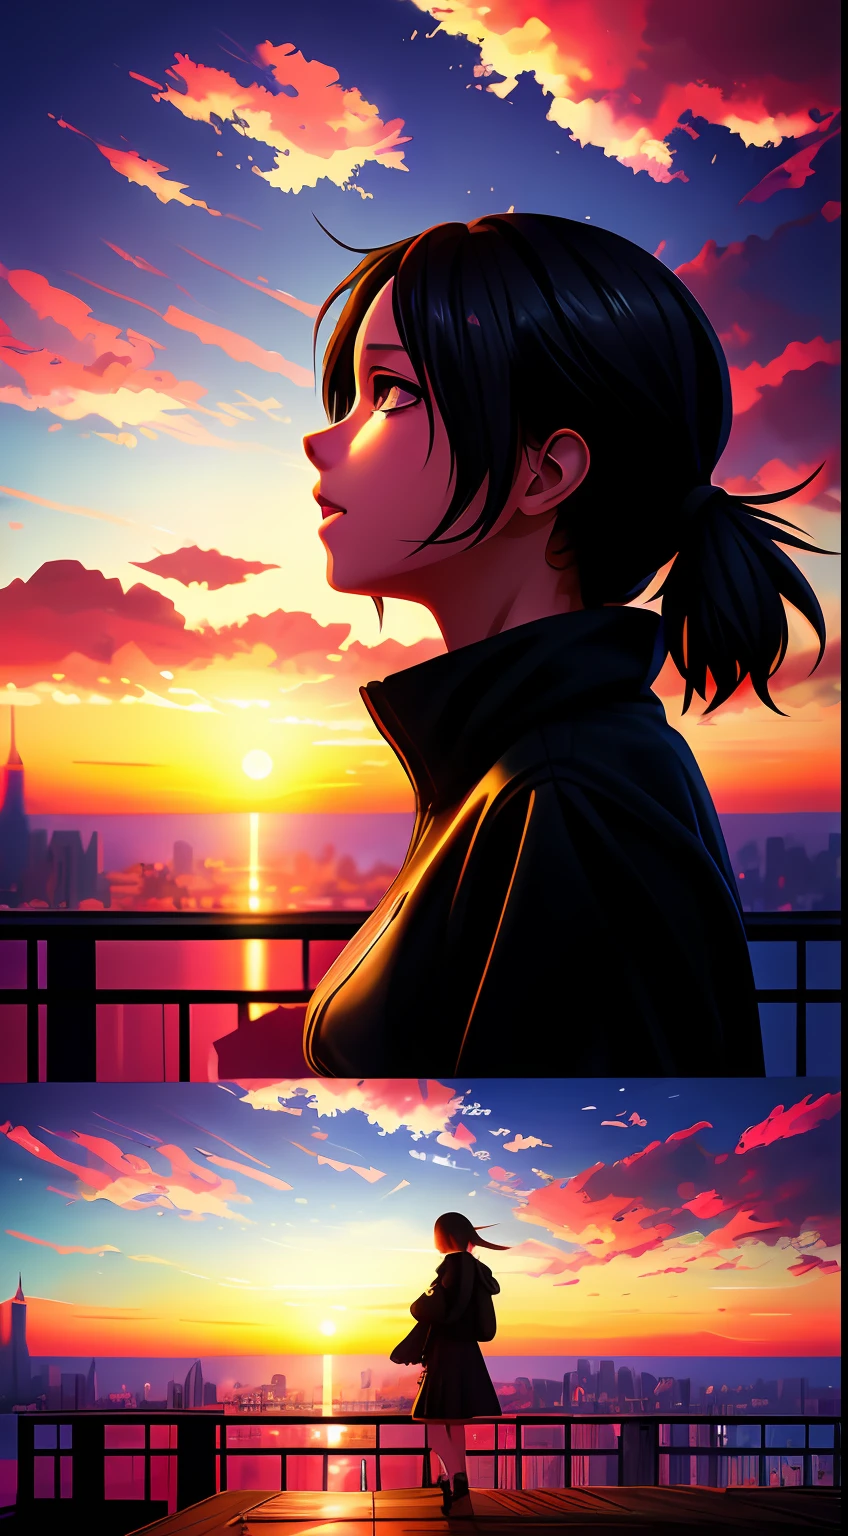 a girl watches the sunset from a rooftop โดย มาโกโตะ ชินไค, โดย มาโกโตะ ชินไค, มาโกโตะ ชินไค ซีริล โรลันโด้, สไตล์ของมาโกโตะ ชินไค, อะนิเมะ. โดย มาโกโตะ ชินไค, realistic อะนิเมะ 3 d style, งานศิลปะในรูปแบบของกูไวซ์, in สไตล์ของมาโกโตะ ชินไค